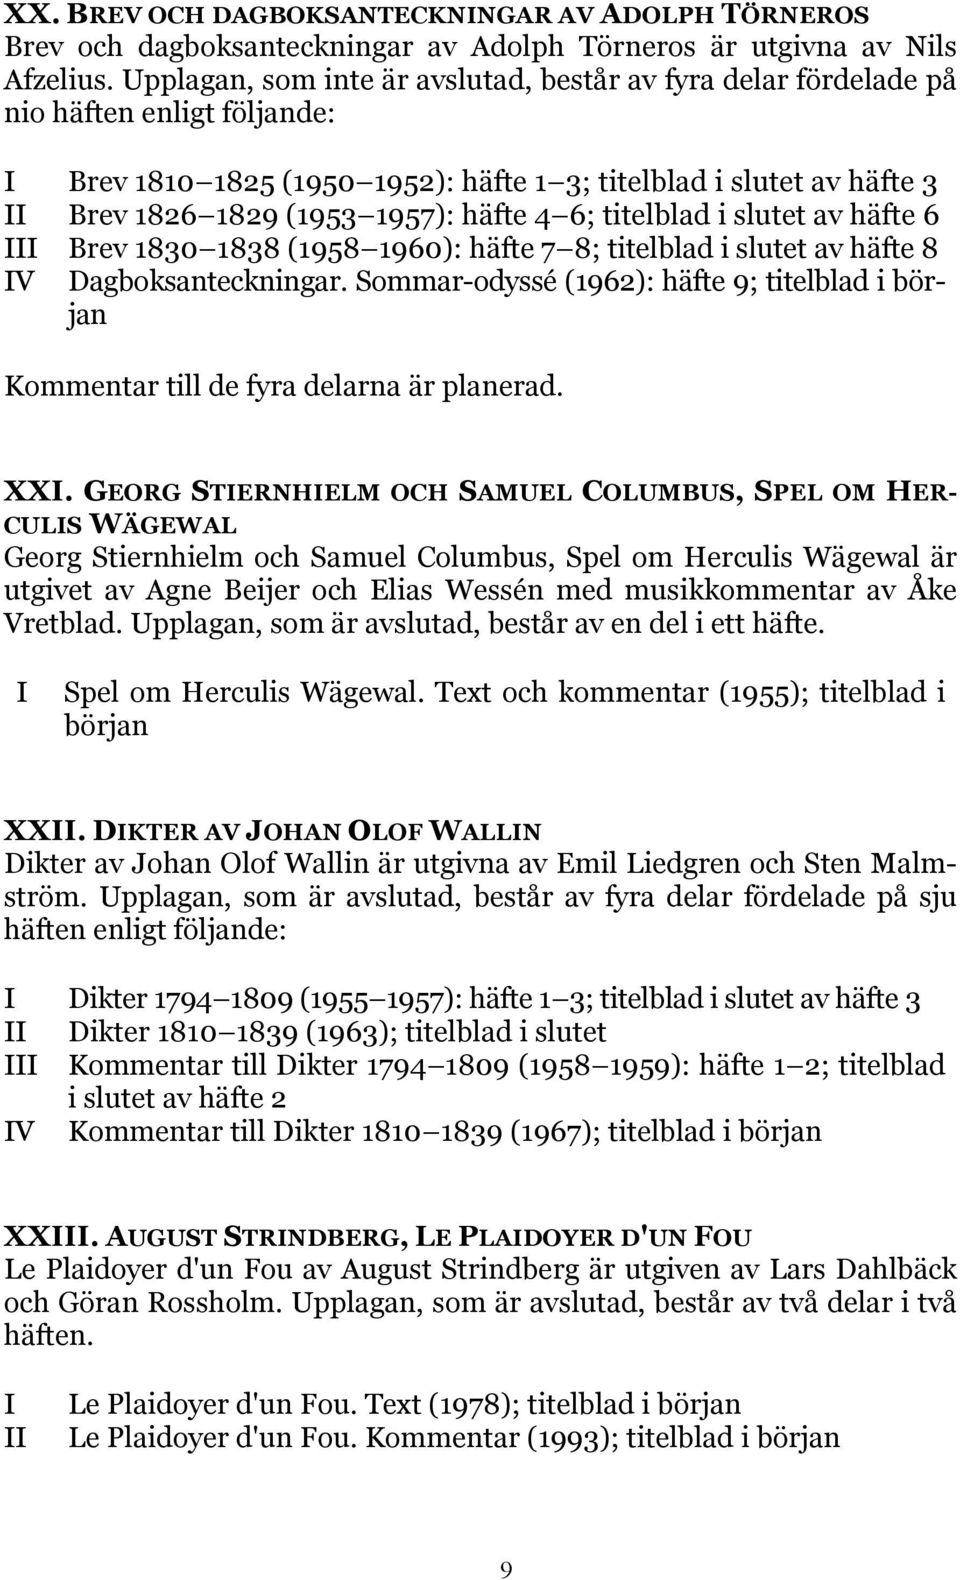 KATALOG SVENSKA FÖRFATTARE UTGIVNA AV SVENSKA VITTERHETSSAMFUNDET. I XXV  (häftesutgivningen) - PDF Free Download